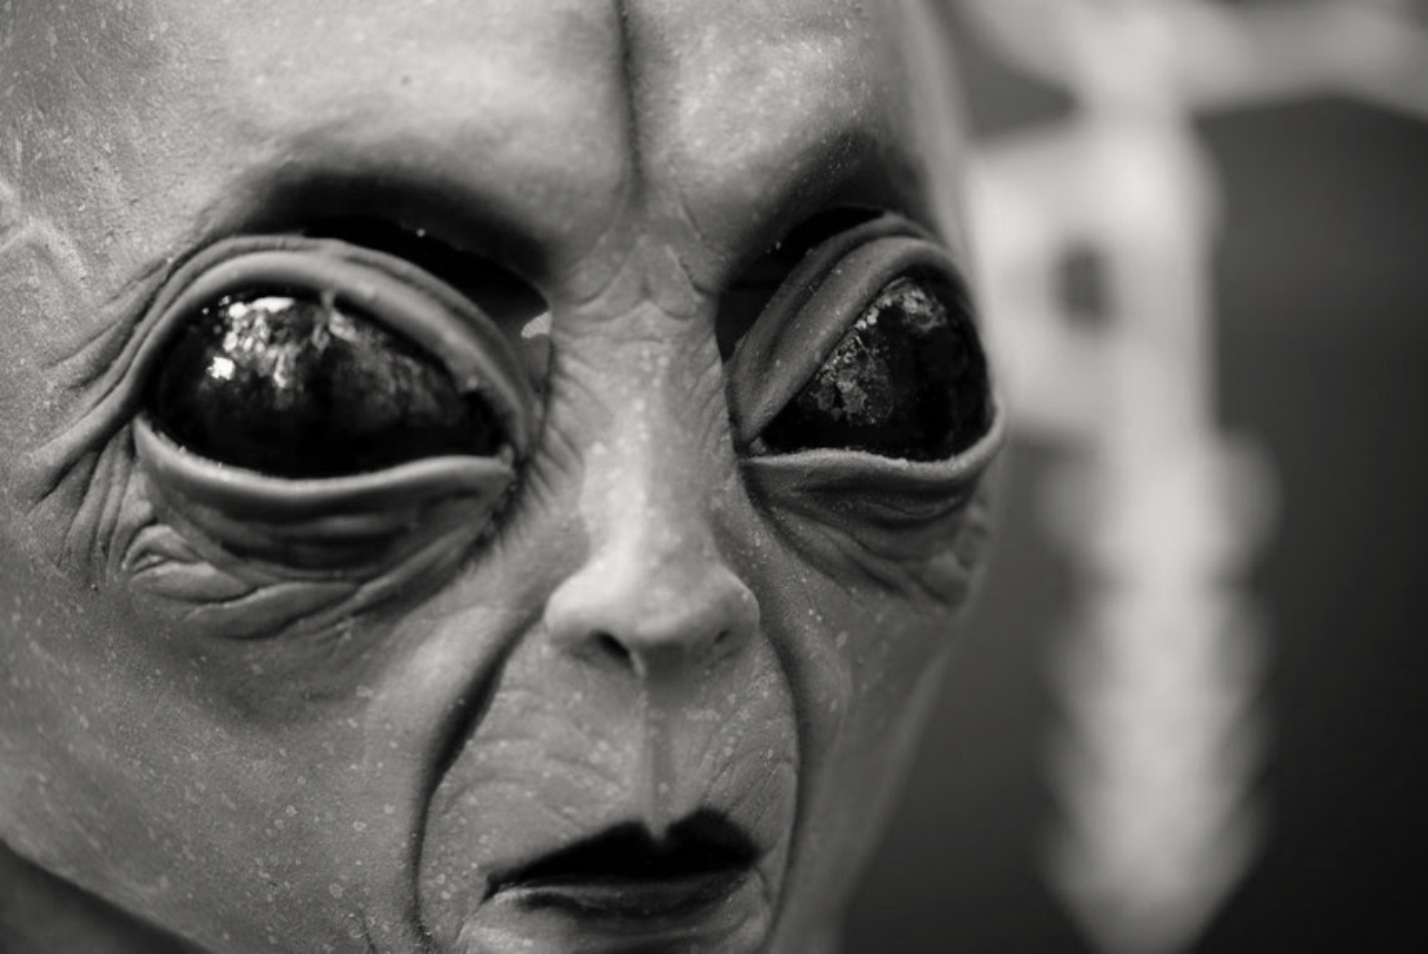 Progetto Serpo: Lo scambio segreto tra alieni e umani 1